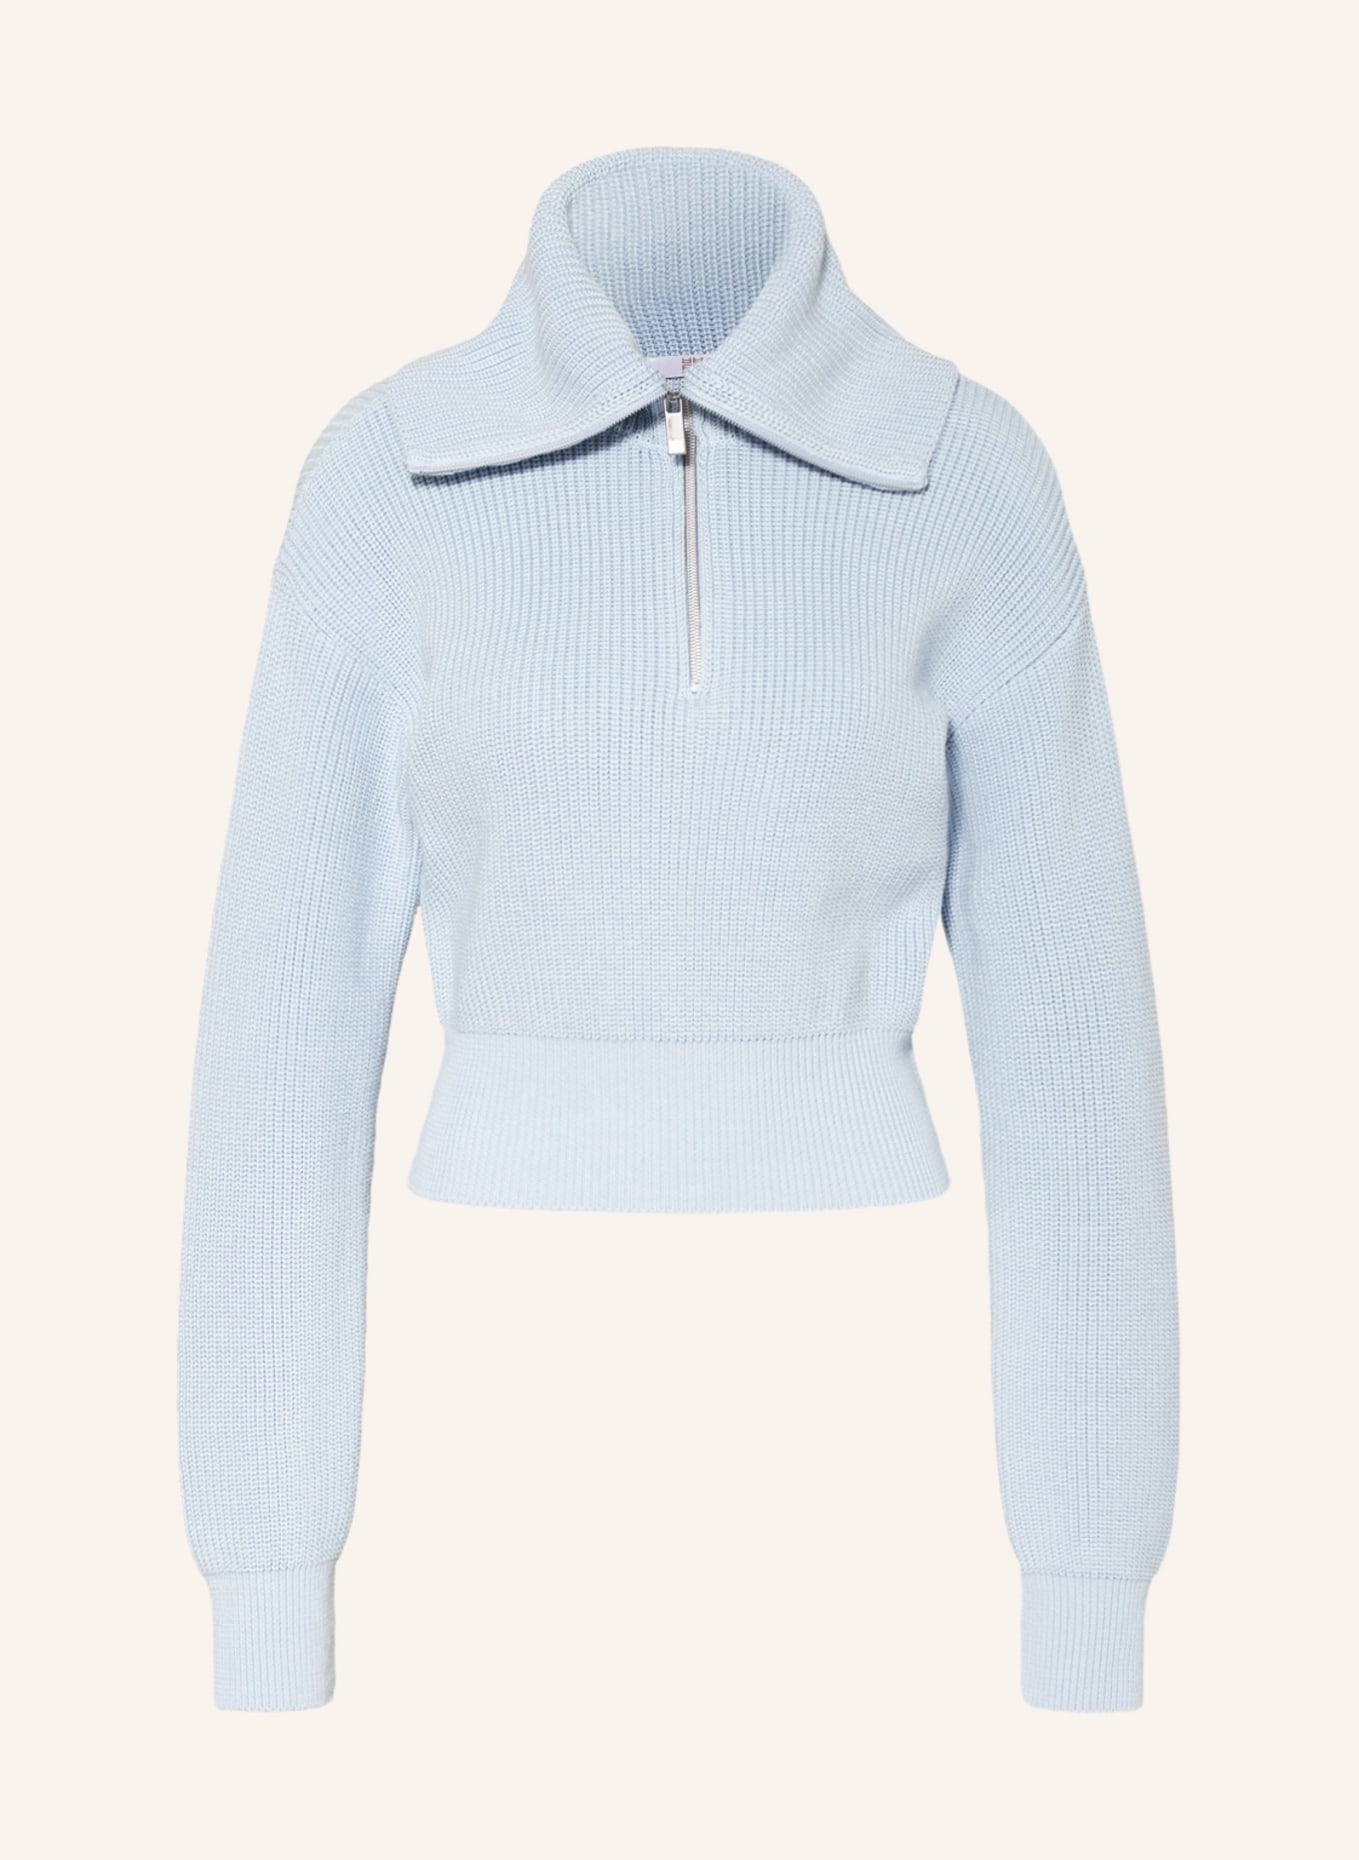 RIANI Half-zip sweater, Color: LIGHT BLUE (Image 1)